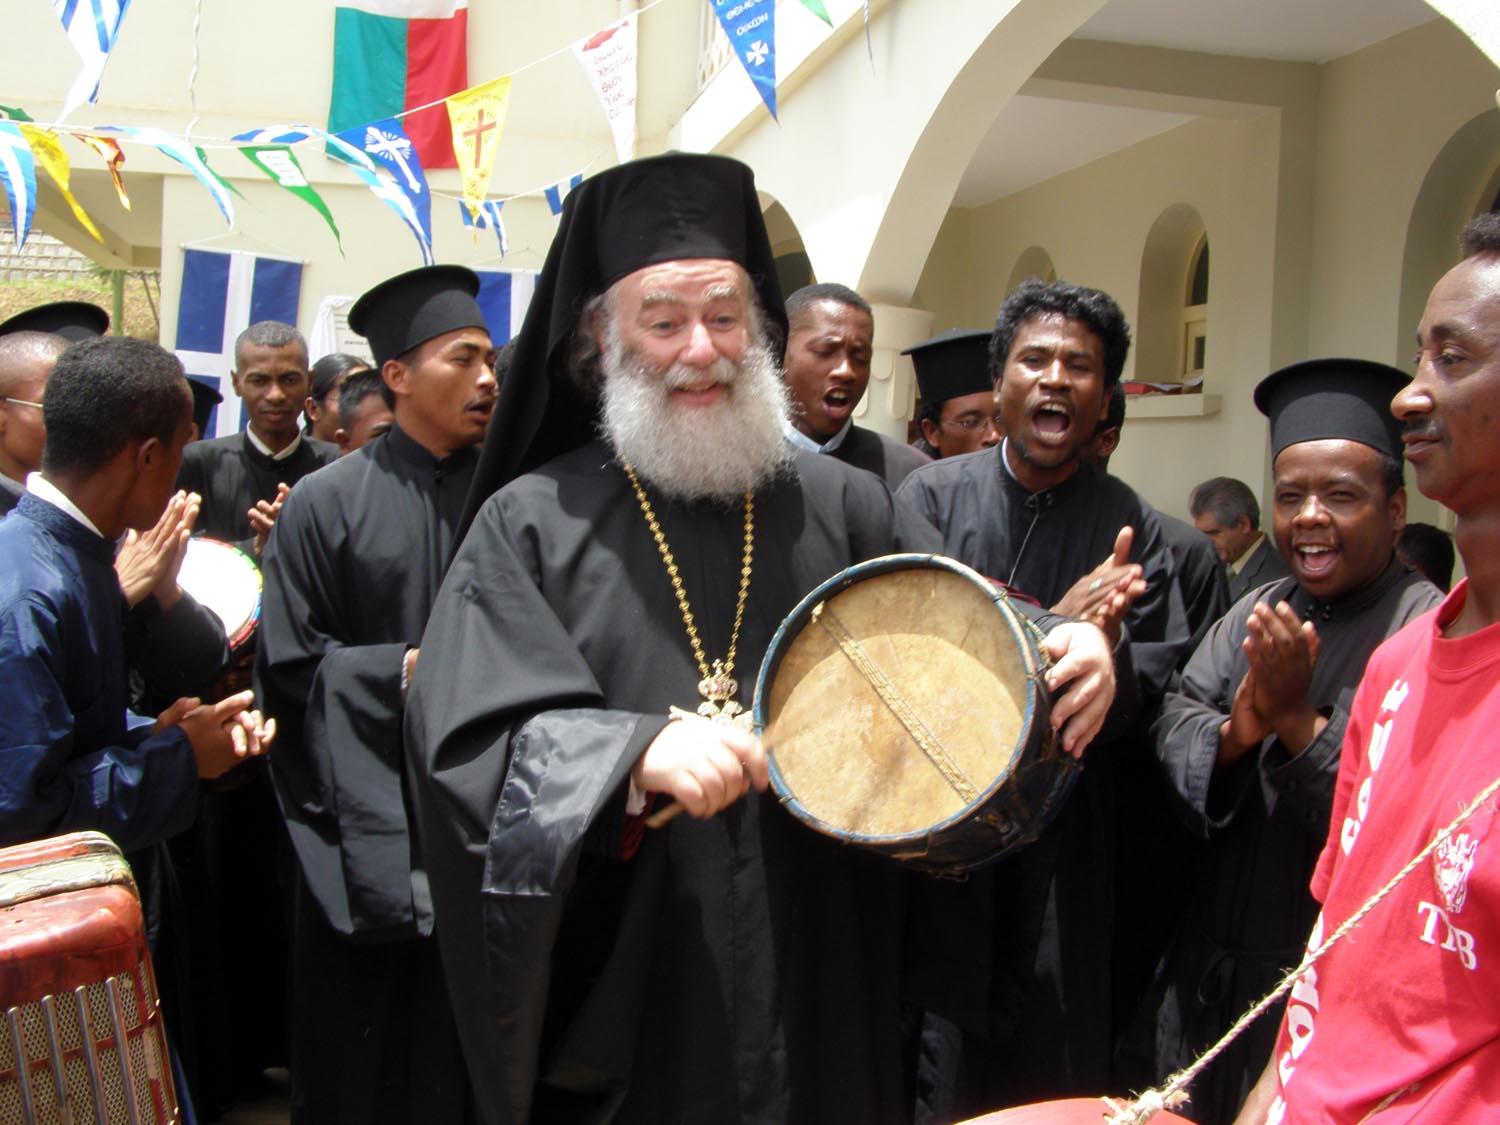 Ιεραποστολική επίσκεψη της Α.Θ.Μ. στην Μαδαγασκάρη - Εόρτια εκδήλωση των αφρικανών ιεροσπουδαστών προς τιμήν της Α.Θ.Μ., κατά την τελετή εγκαινίων του Εκκλησιαστικού Σεμιναρίου της Ιεράς Επισκοπής Μαδαγασκάρης.